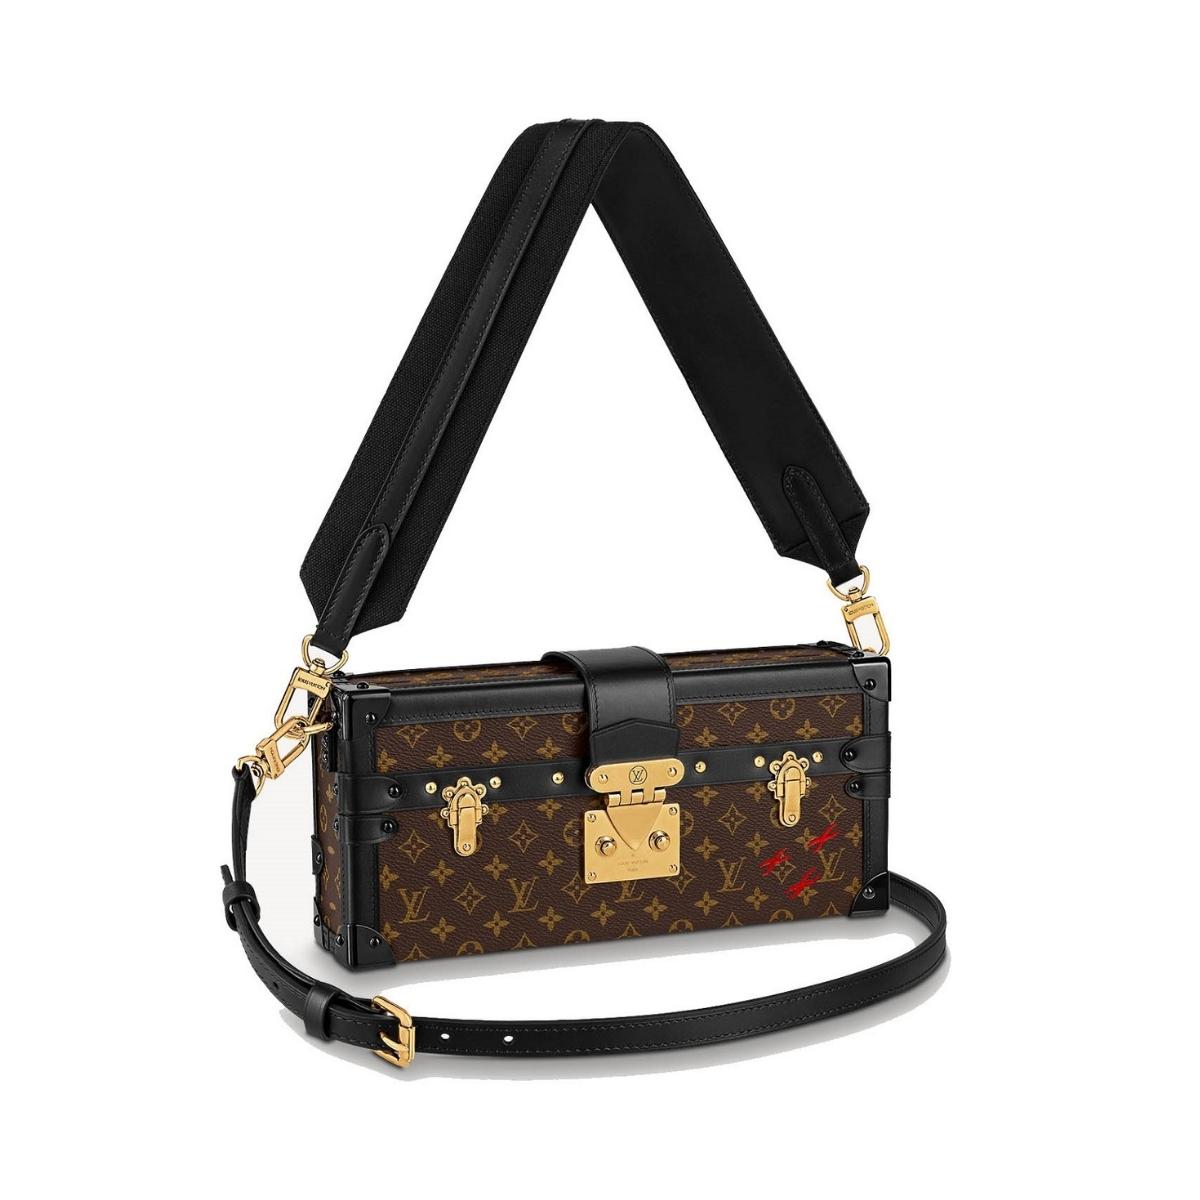 Túi Louis Vuitton Petite Malle East West Bag like Authentic |  Shoptuihanghieu.com™